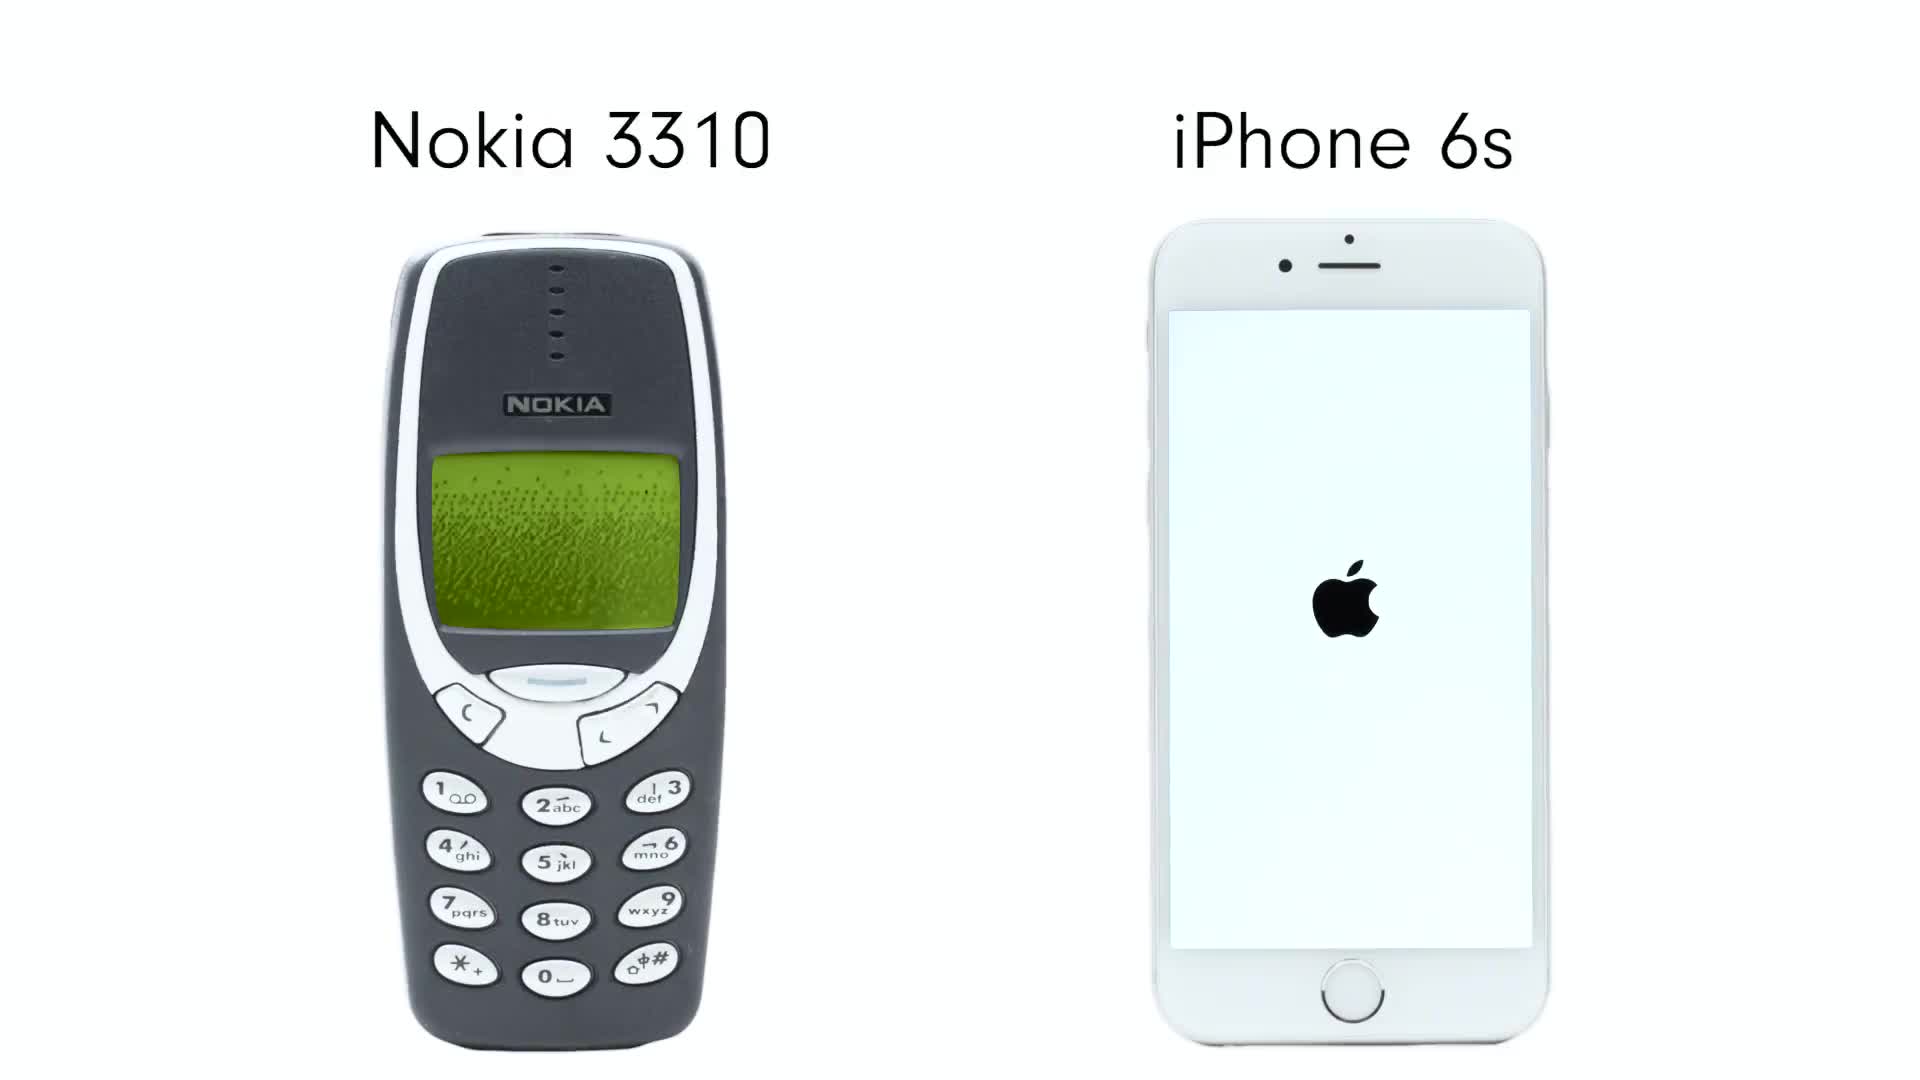 So sánh Nokia 3310 và iPhone 6s là câu hỏi được rất nhiều người quan tâm. Hãy đến với chúng tôi để tìm kiếm những bức ảnh so sánh bên cạnh nhau giữa hai chiếc điện thoại này, giúp bạn có được cái nhìn tổng quan và hình dung được điểm mạnh cũng như điểm yếu của hai sản phẩm này.